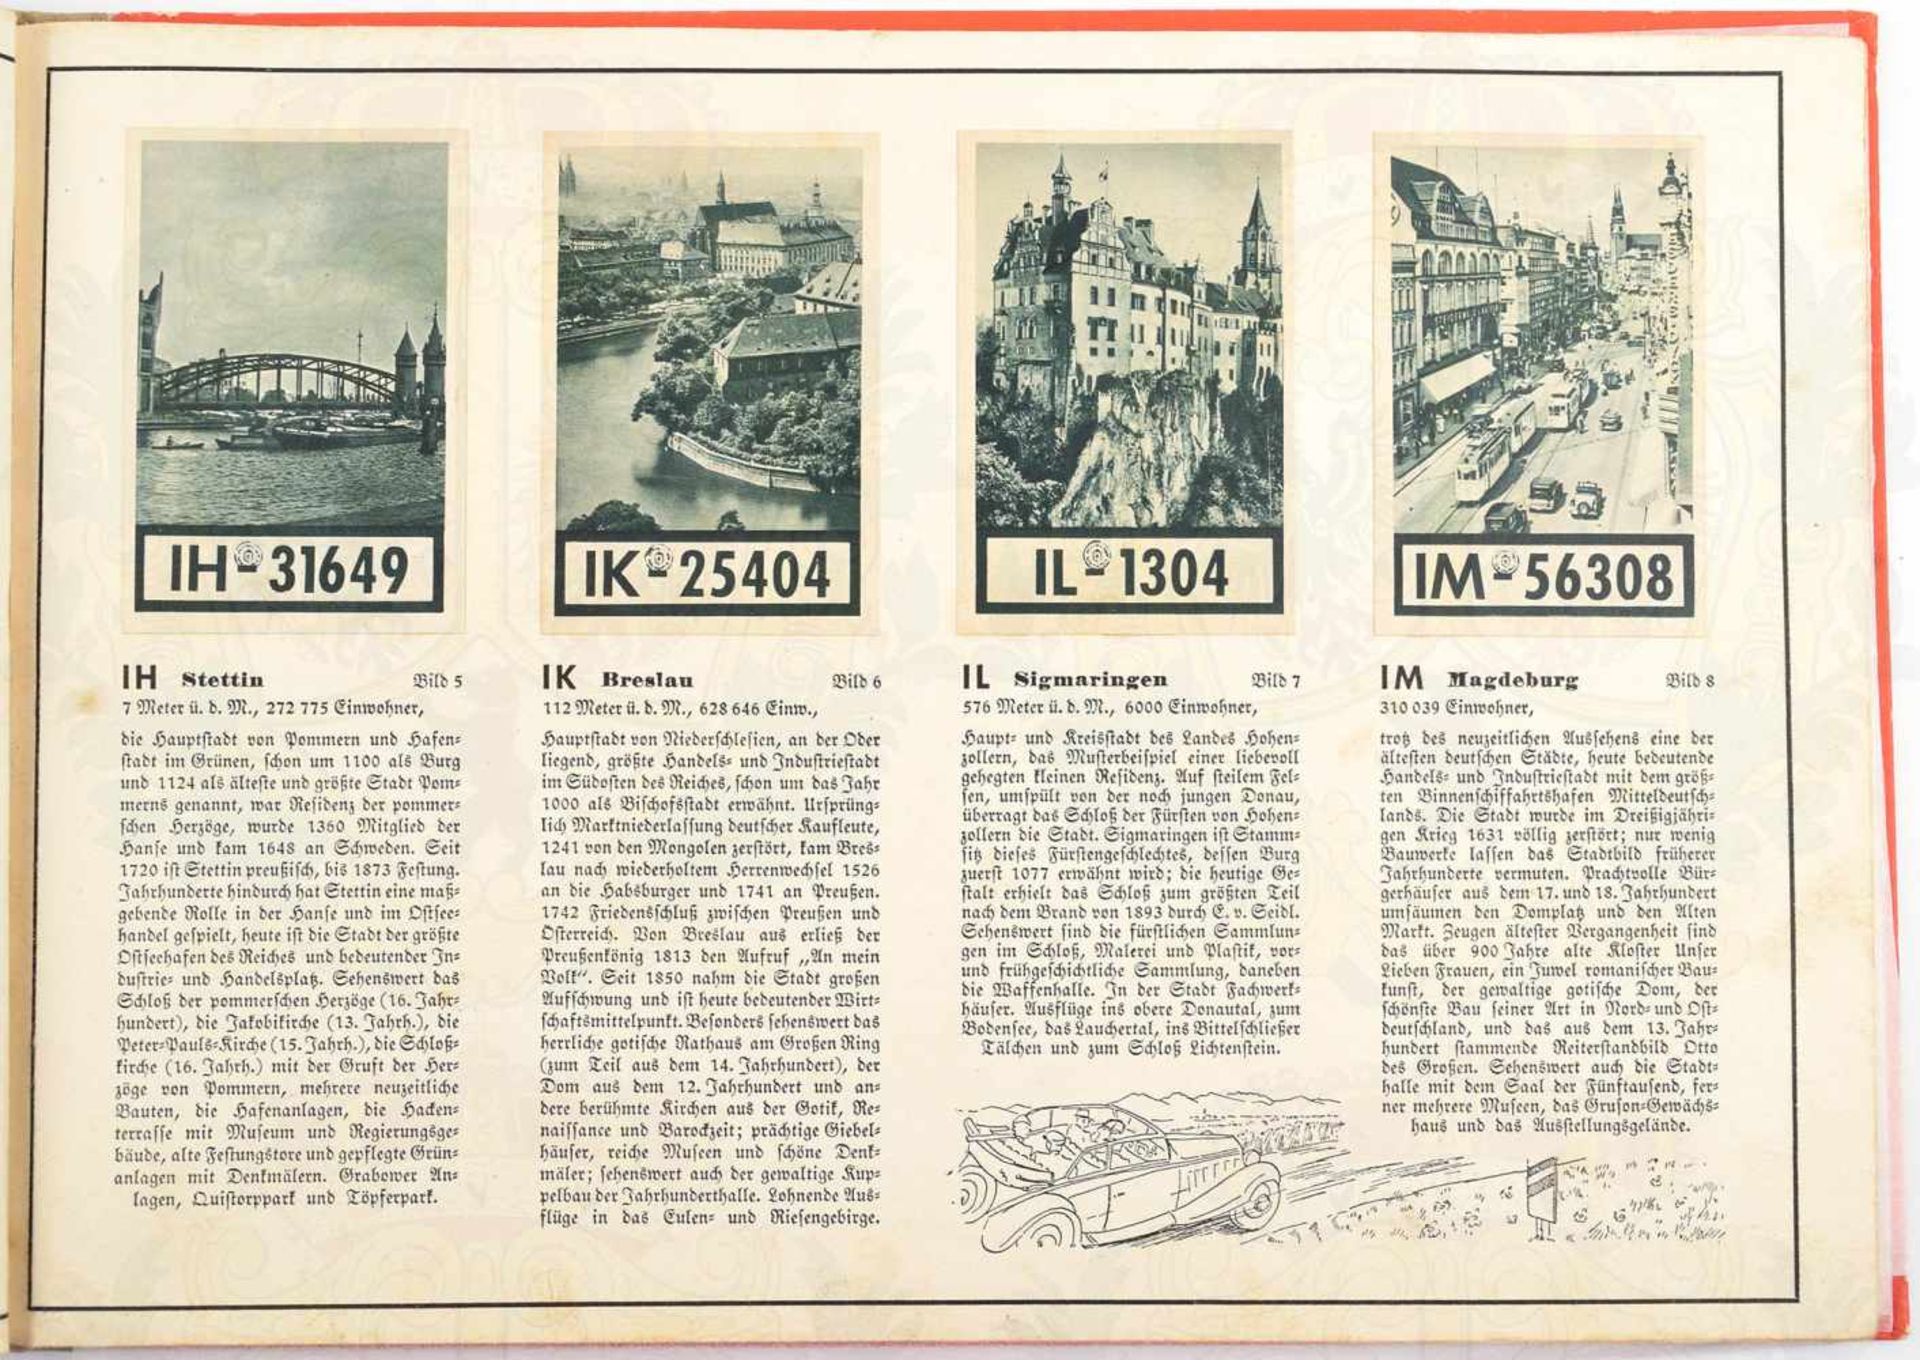 WIR FAHREN DURCH DEUTSCHLAND, Ein Bildwerk Deutsche Auto-Kennzeichen, Petersen, Flensburg 1938, kpl. - Bild 3 aus 3